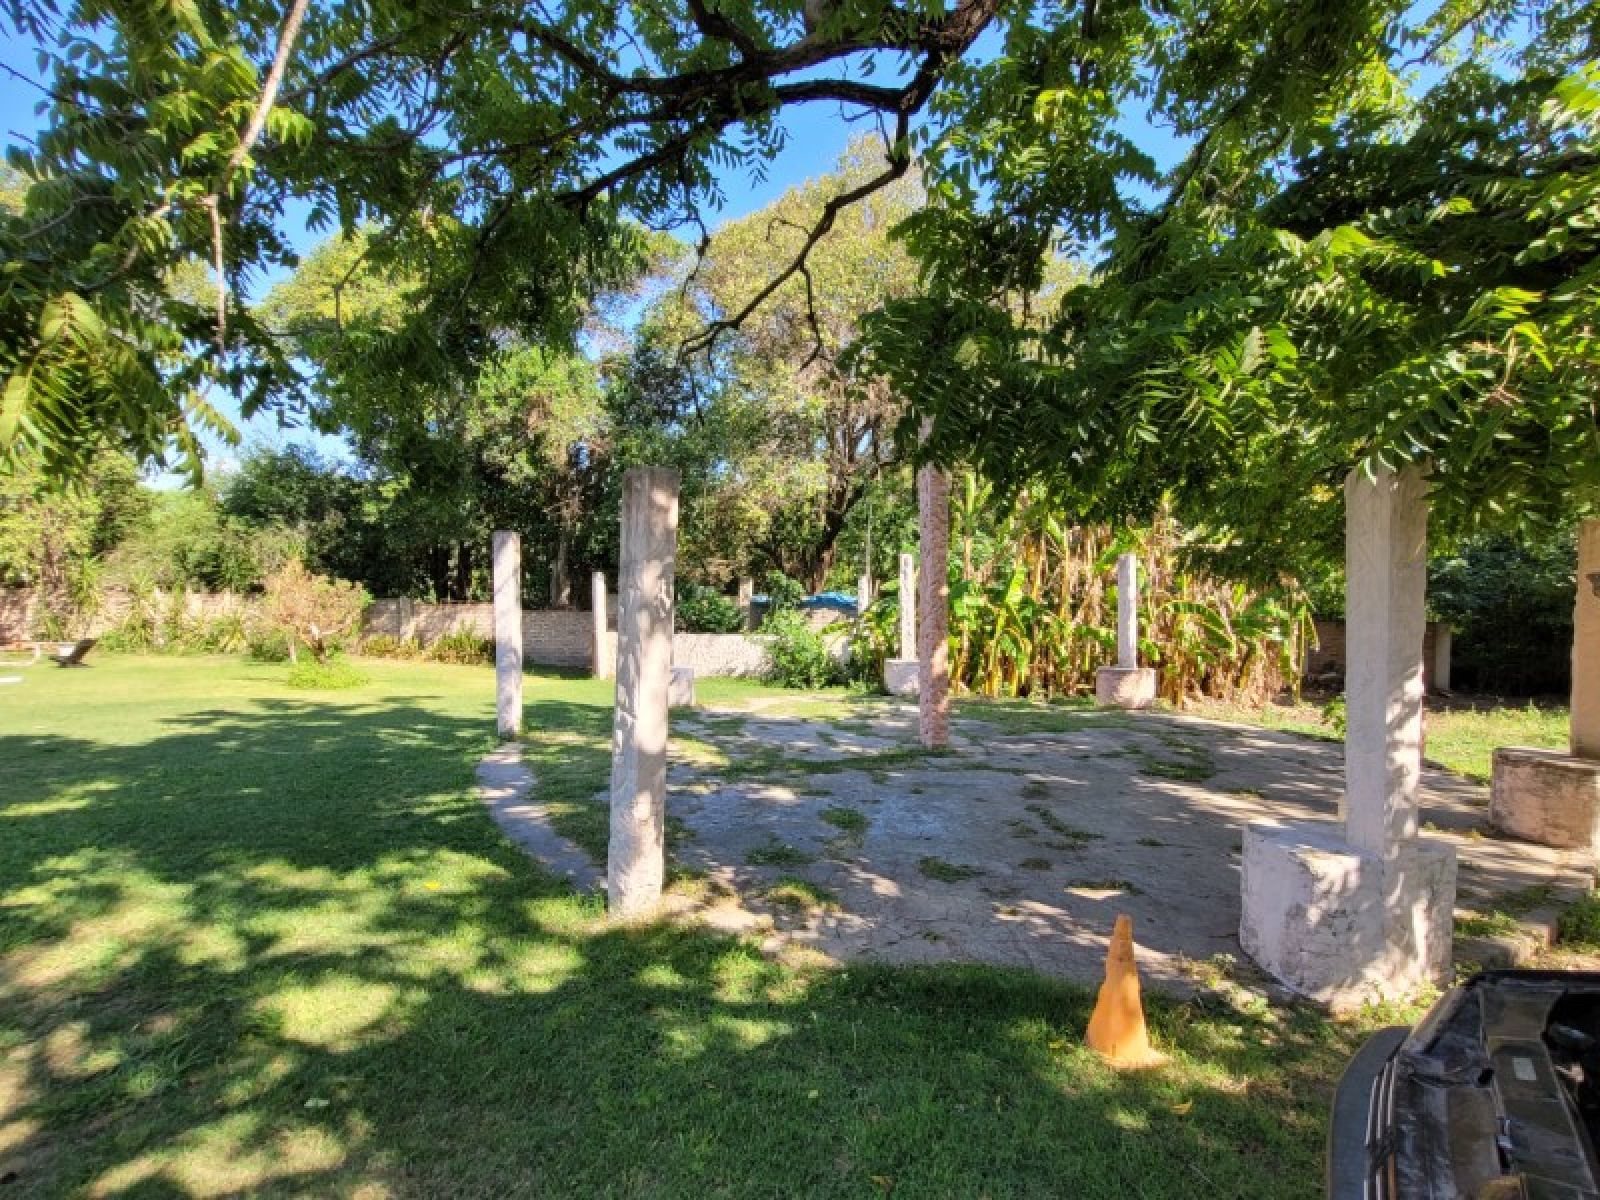 ¡VENTA! Casa Quinta con parque arbolado y pileta con solárium! 2400m2!Curva de Capurro - Victoria, Entre Ríos